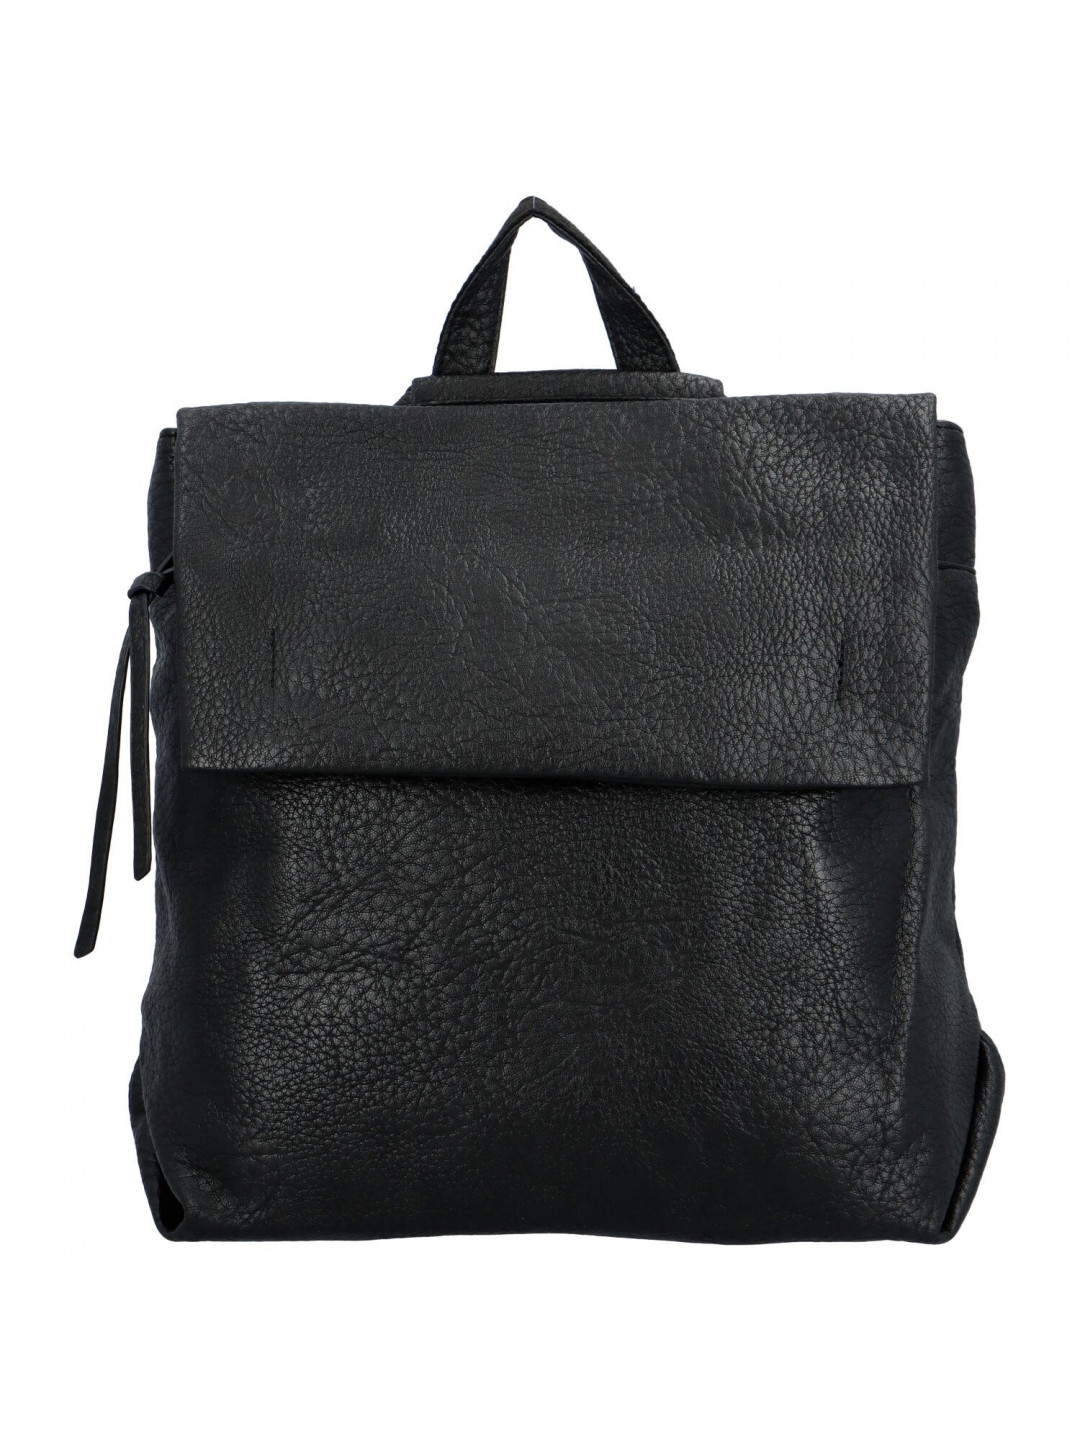 Dámský kabelko-batoh černý – Paolo bags Ralica